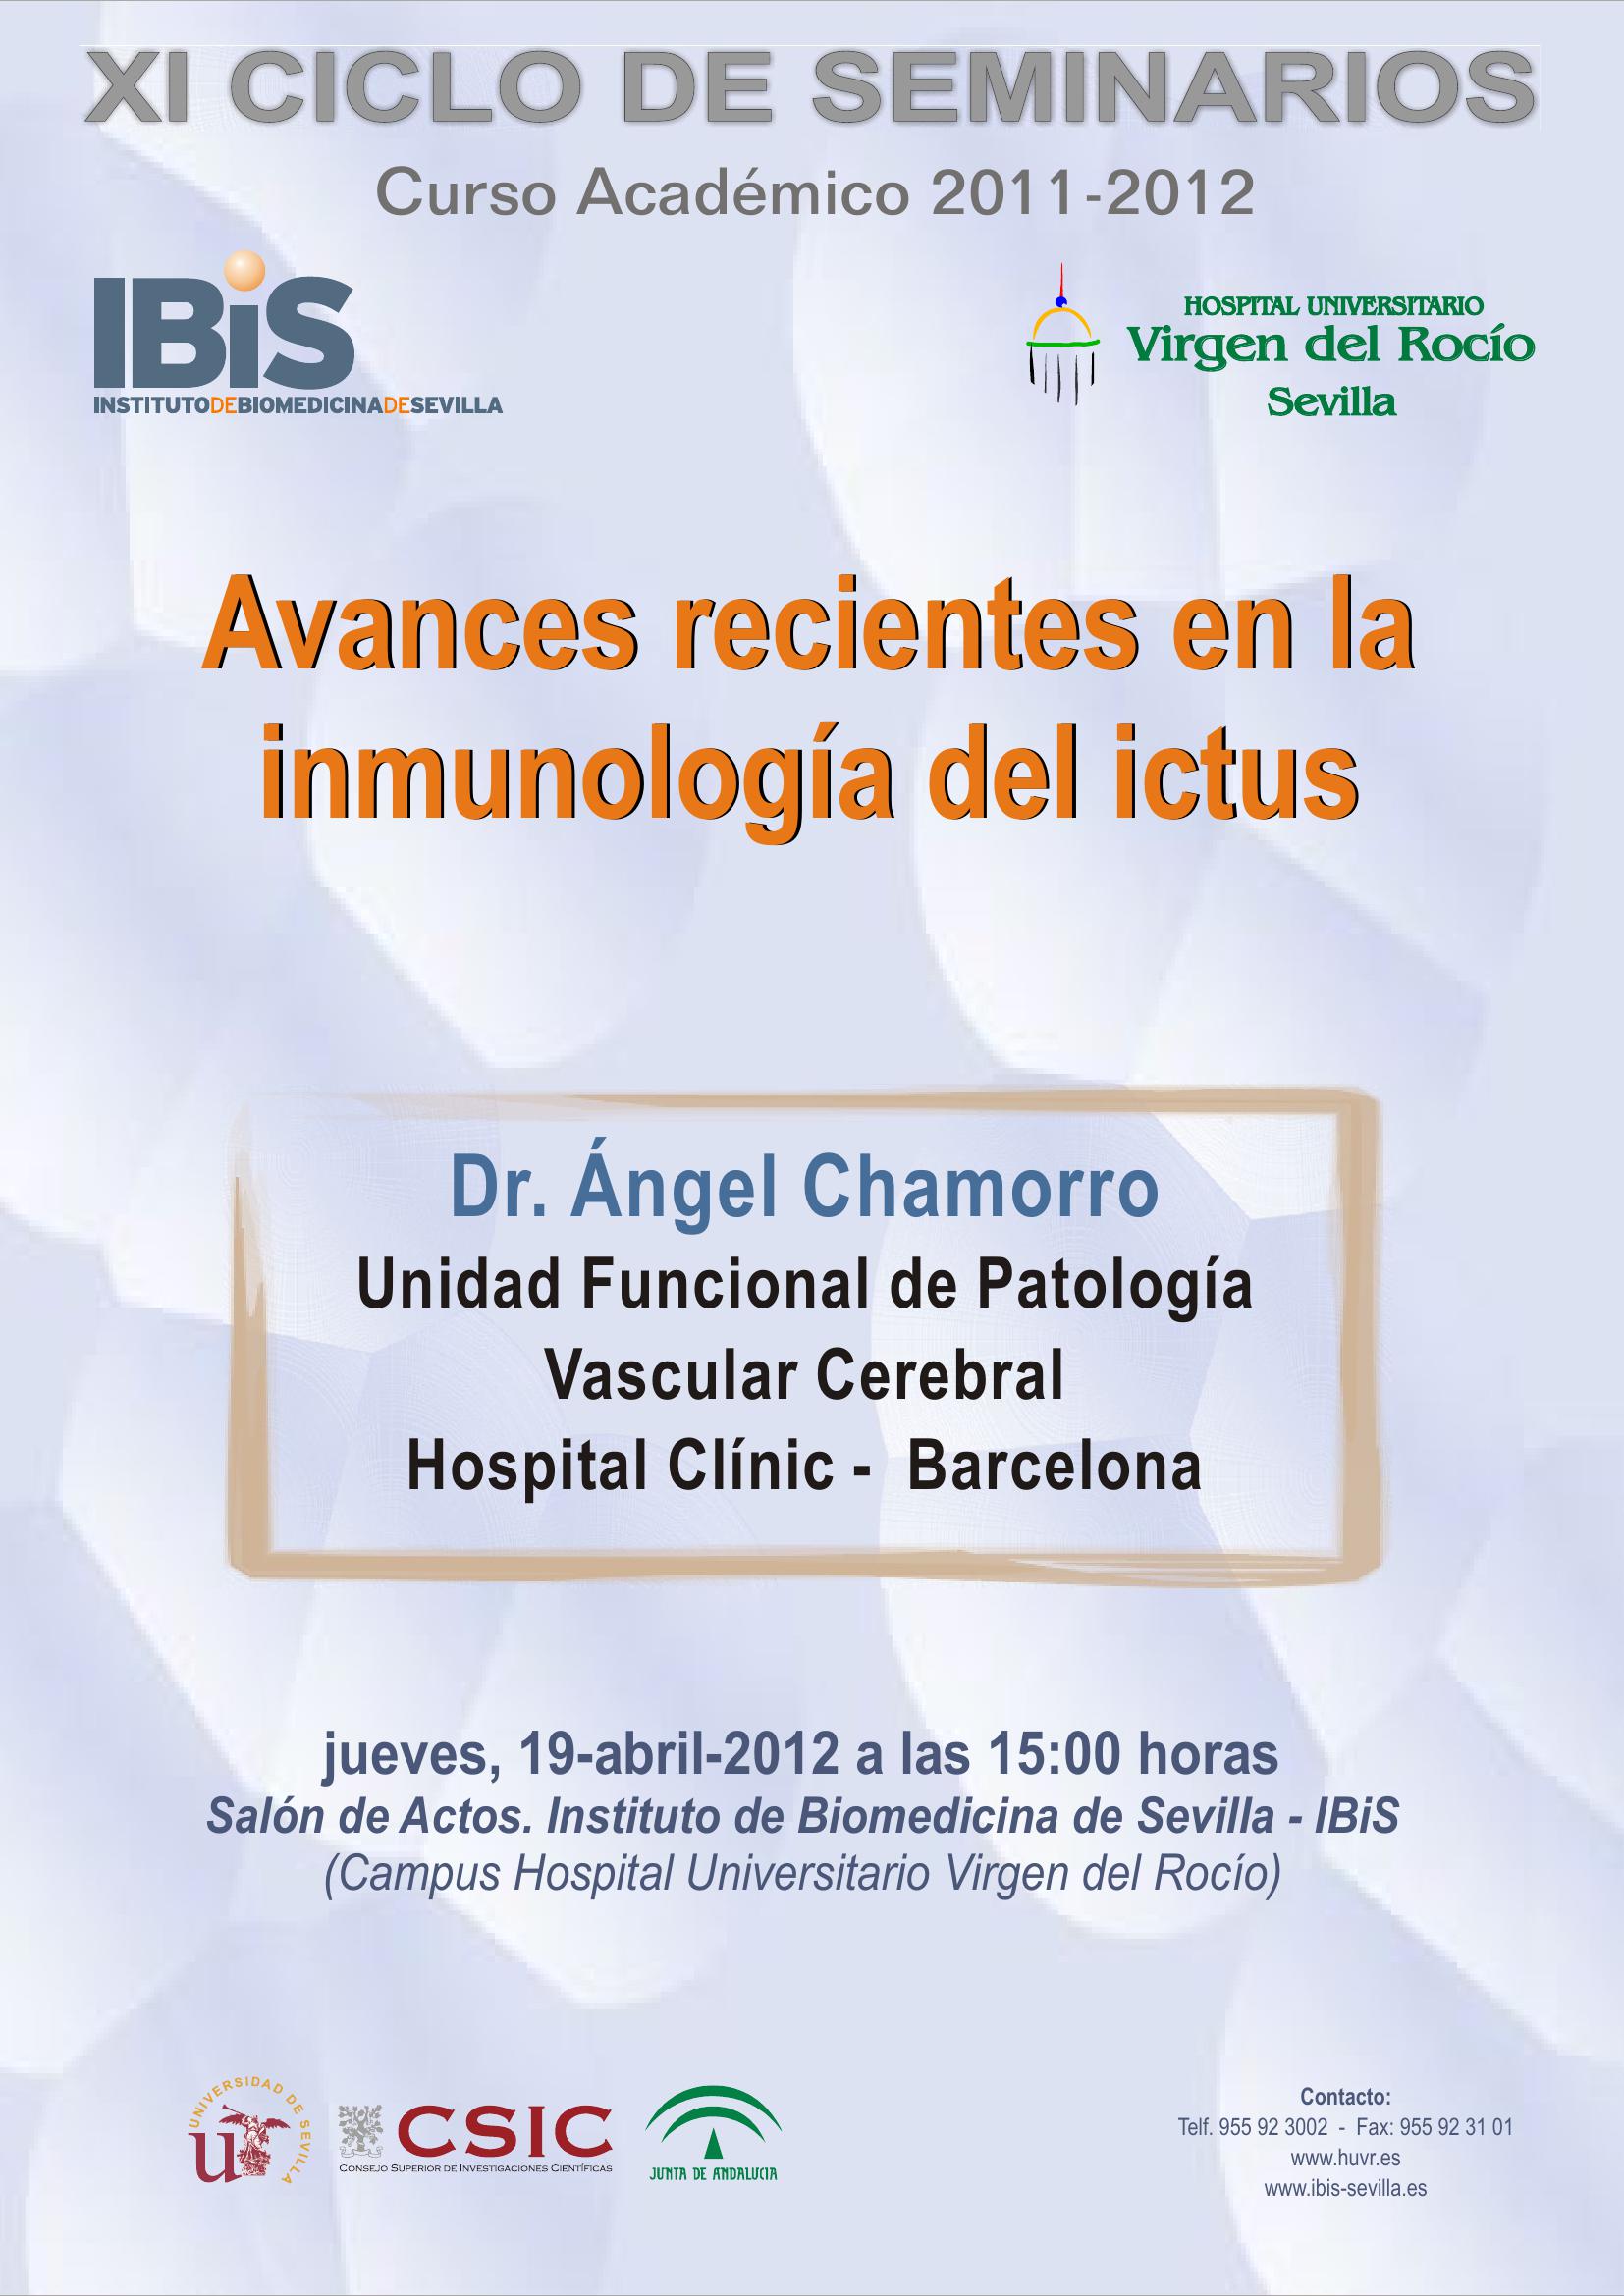 Poster: Avances recientes en la inmunología del ictus